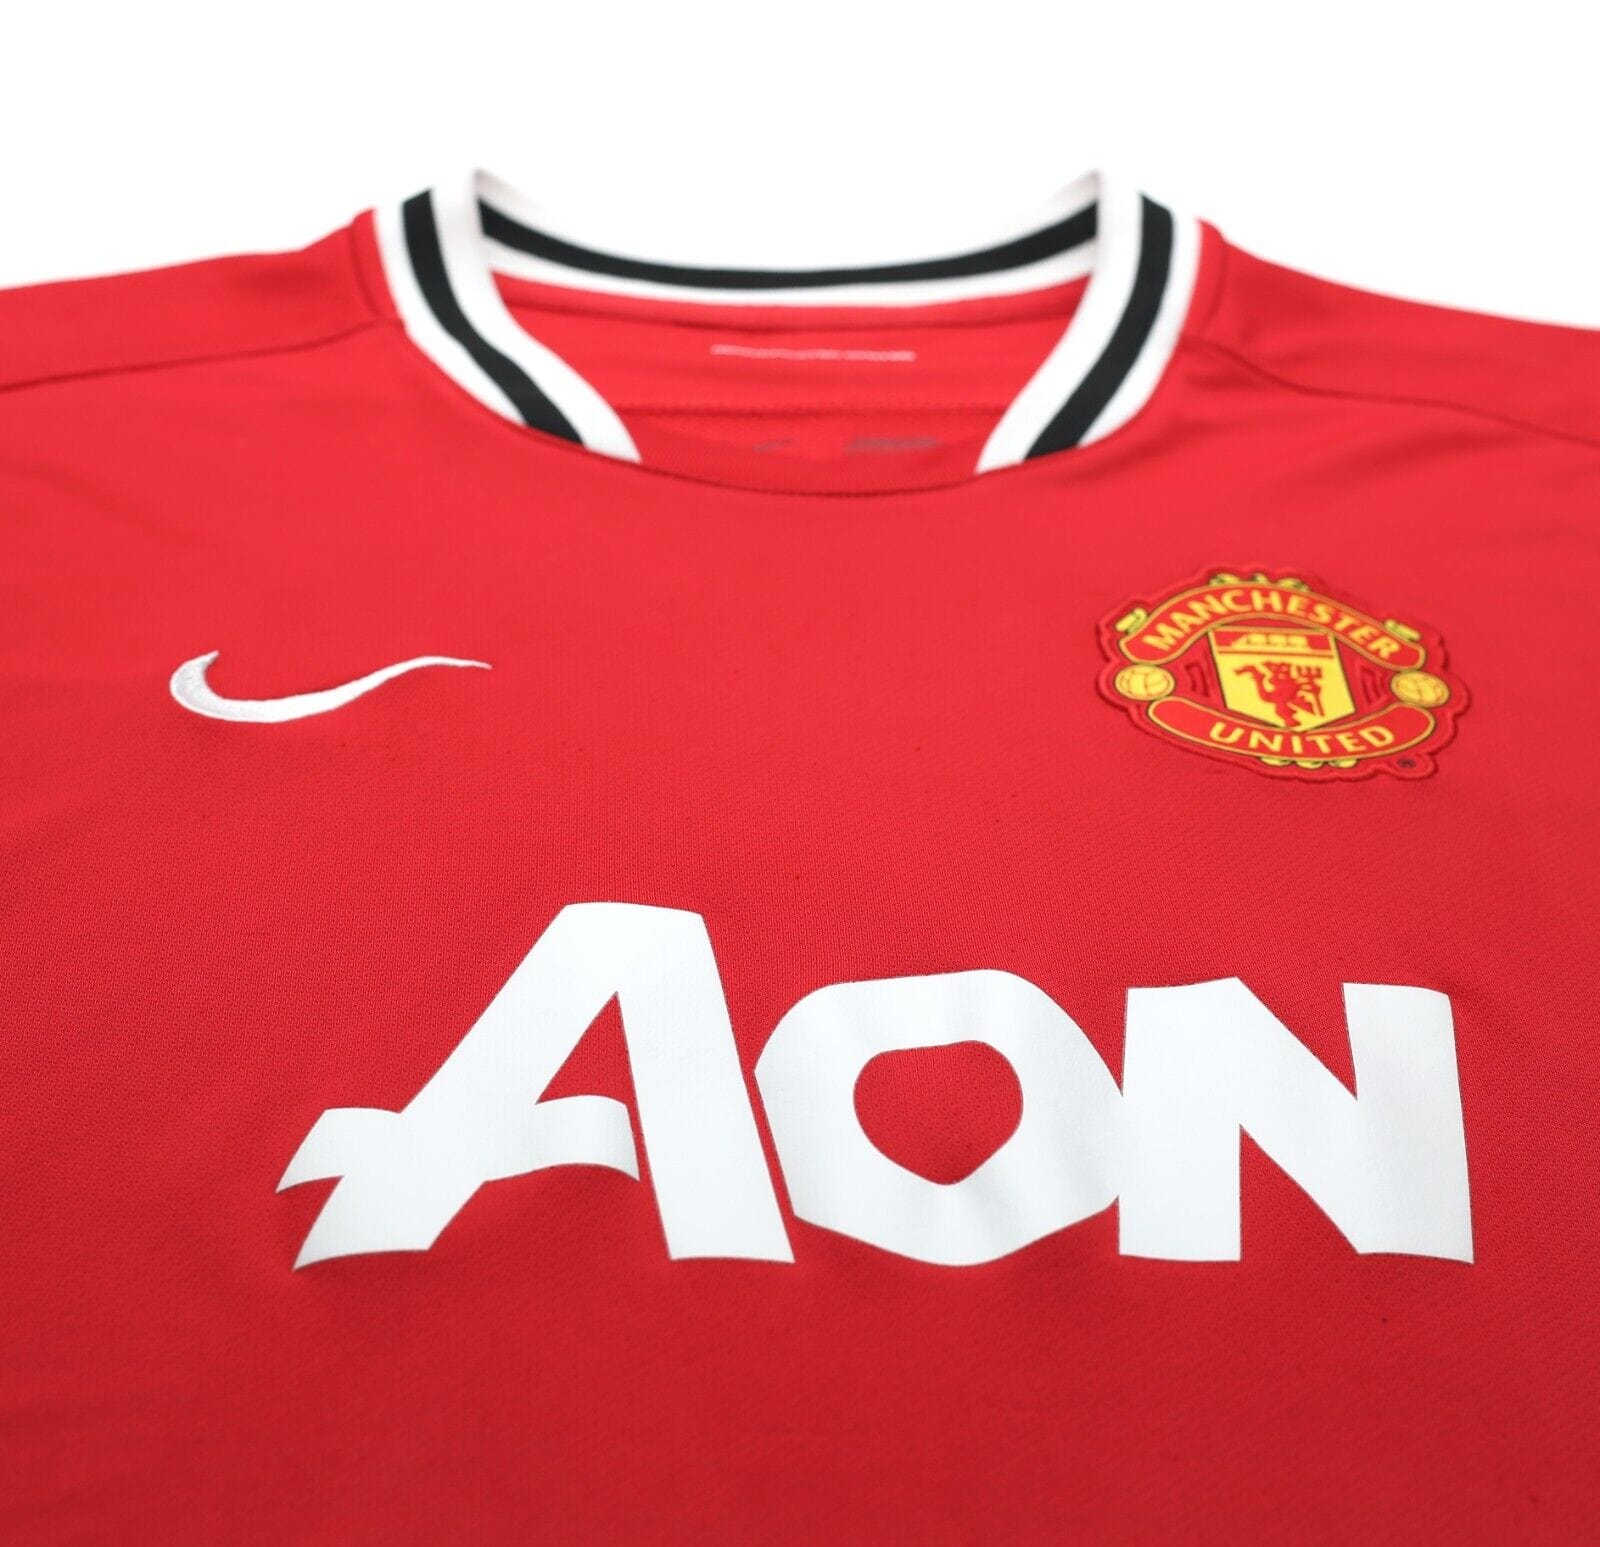 man united 2011 kit